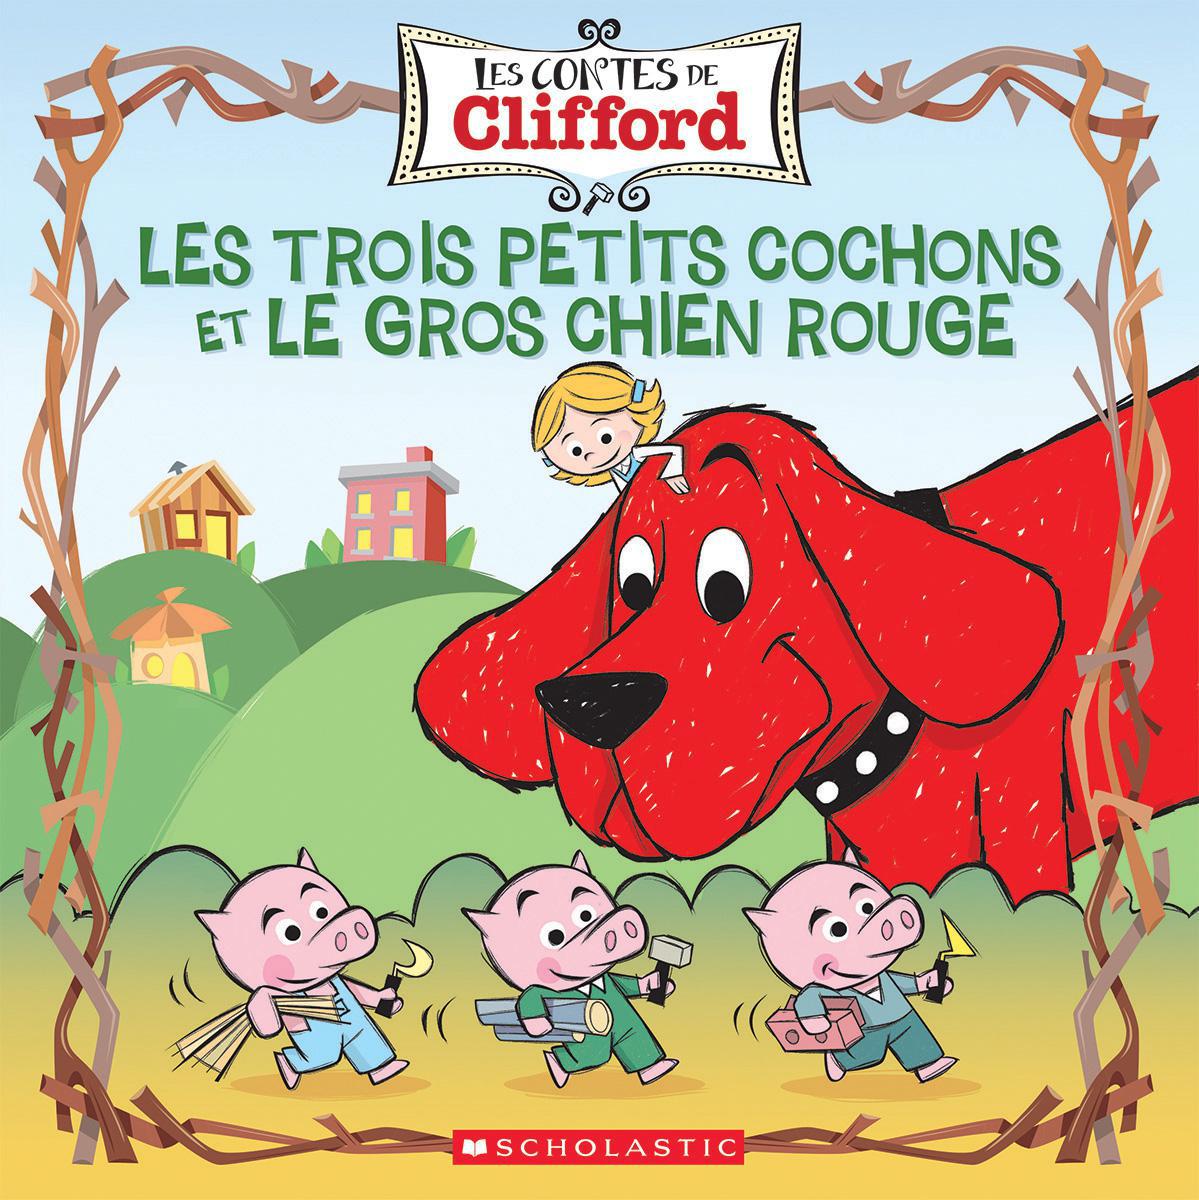  Les contes de Clifford : Les trois petits cochons et le gros chien rouge 